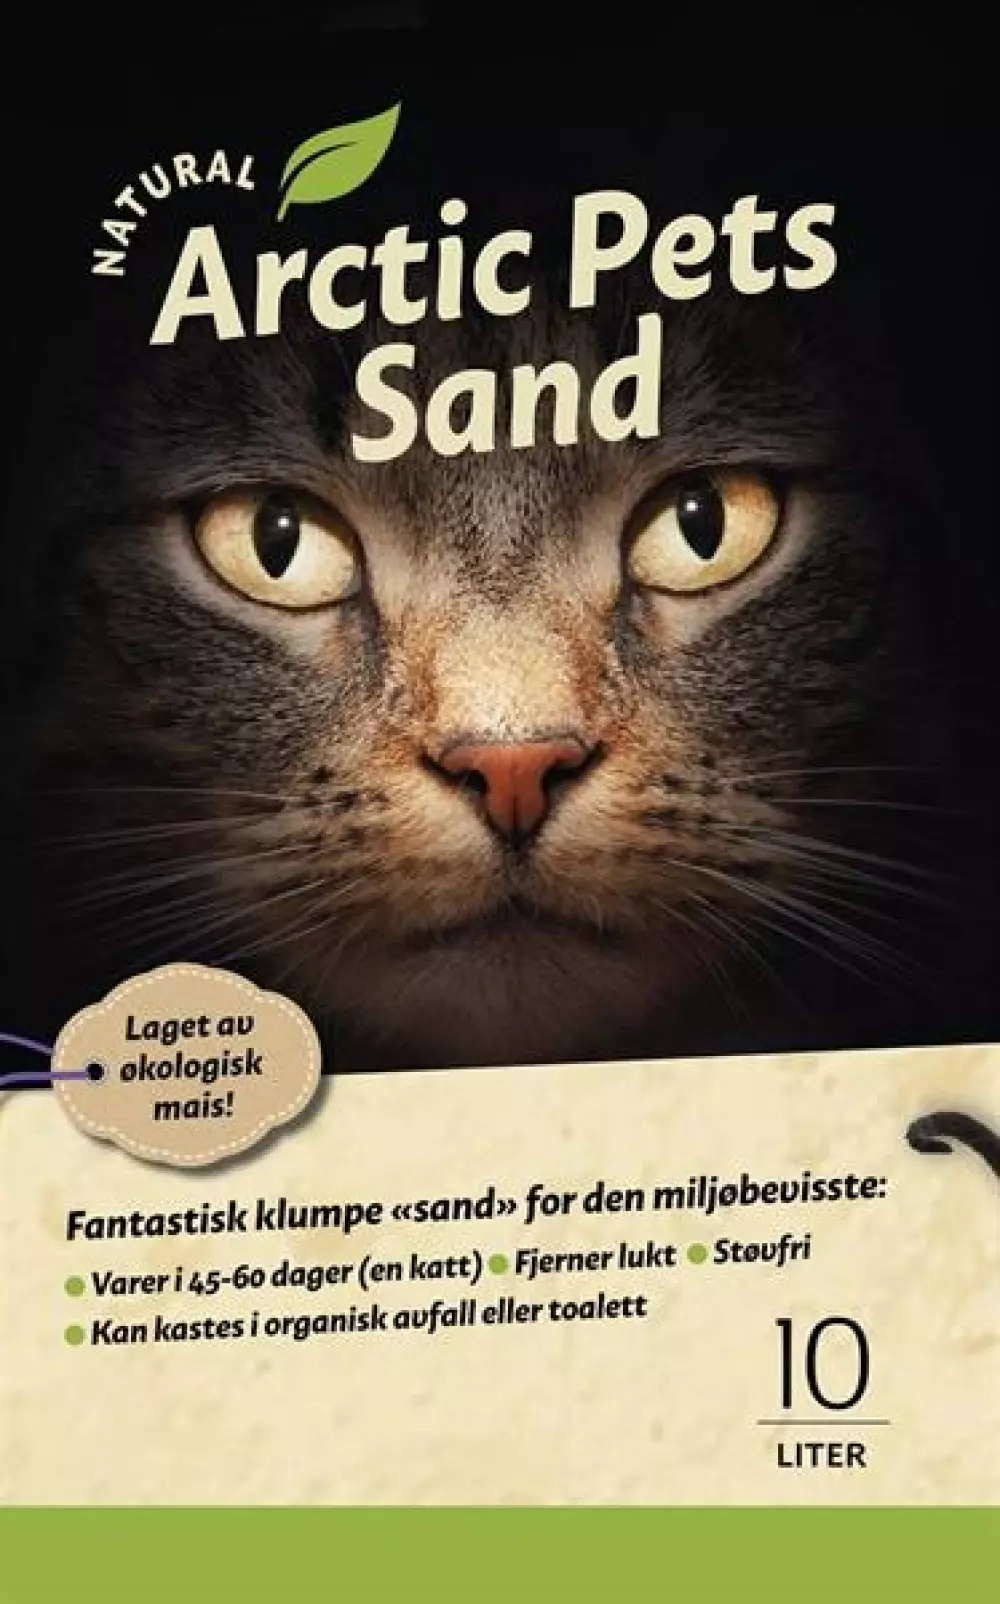 Miljøvennlig kattesand, økologisk kattesand, Arctic Pets Sand